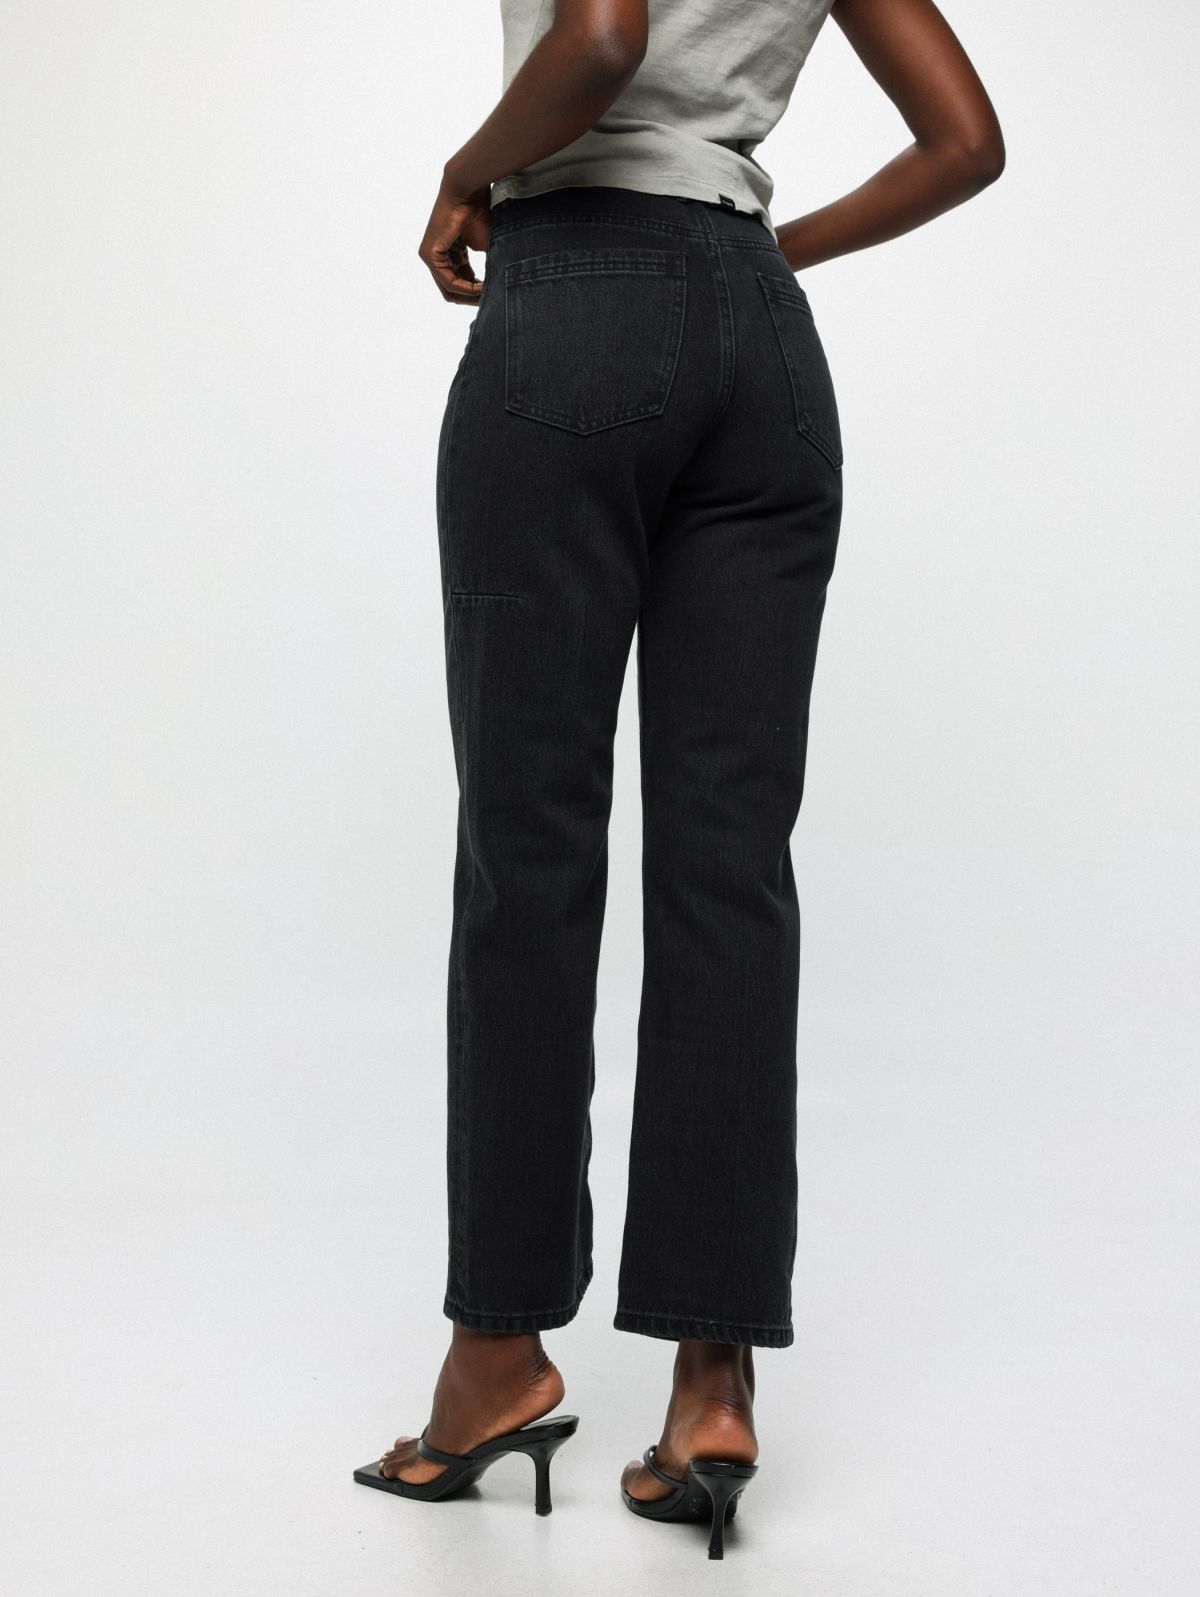  ג'ינס ארוך בגזרה ישרה של THRILLS